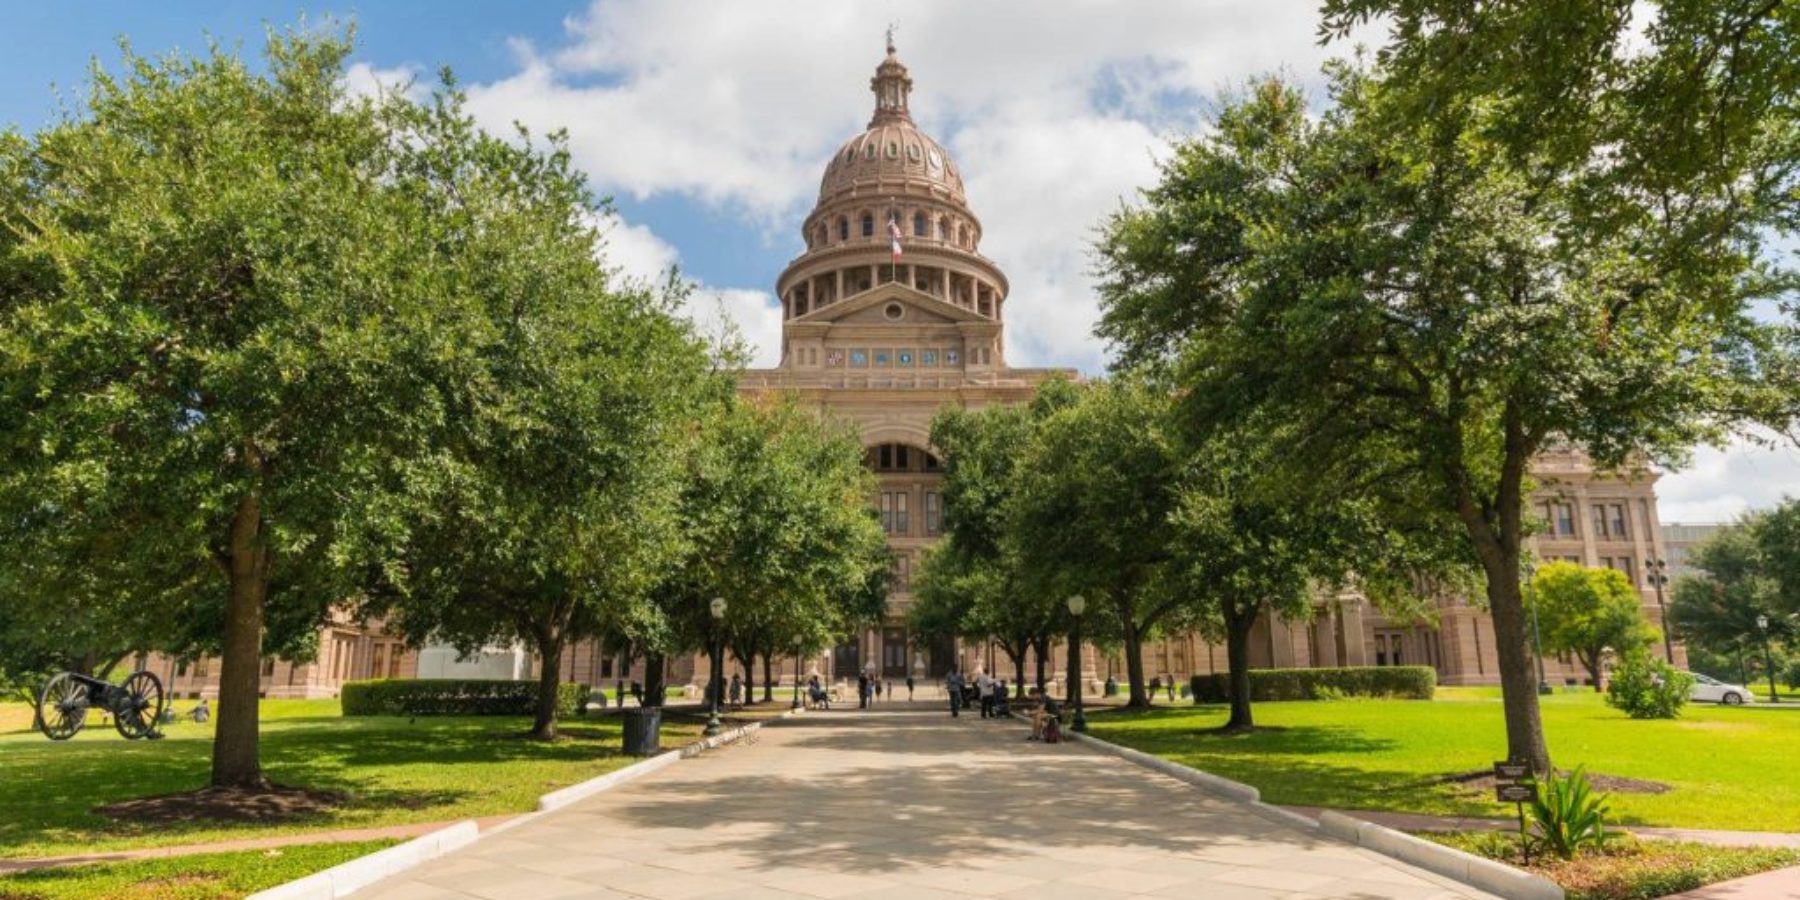 Great-Walk-Texas-Capitol-Building-1024x683